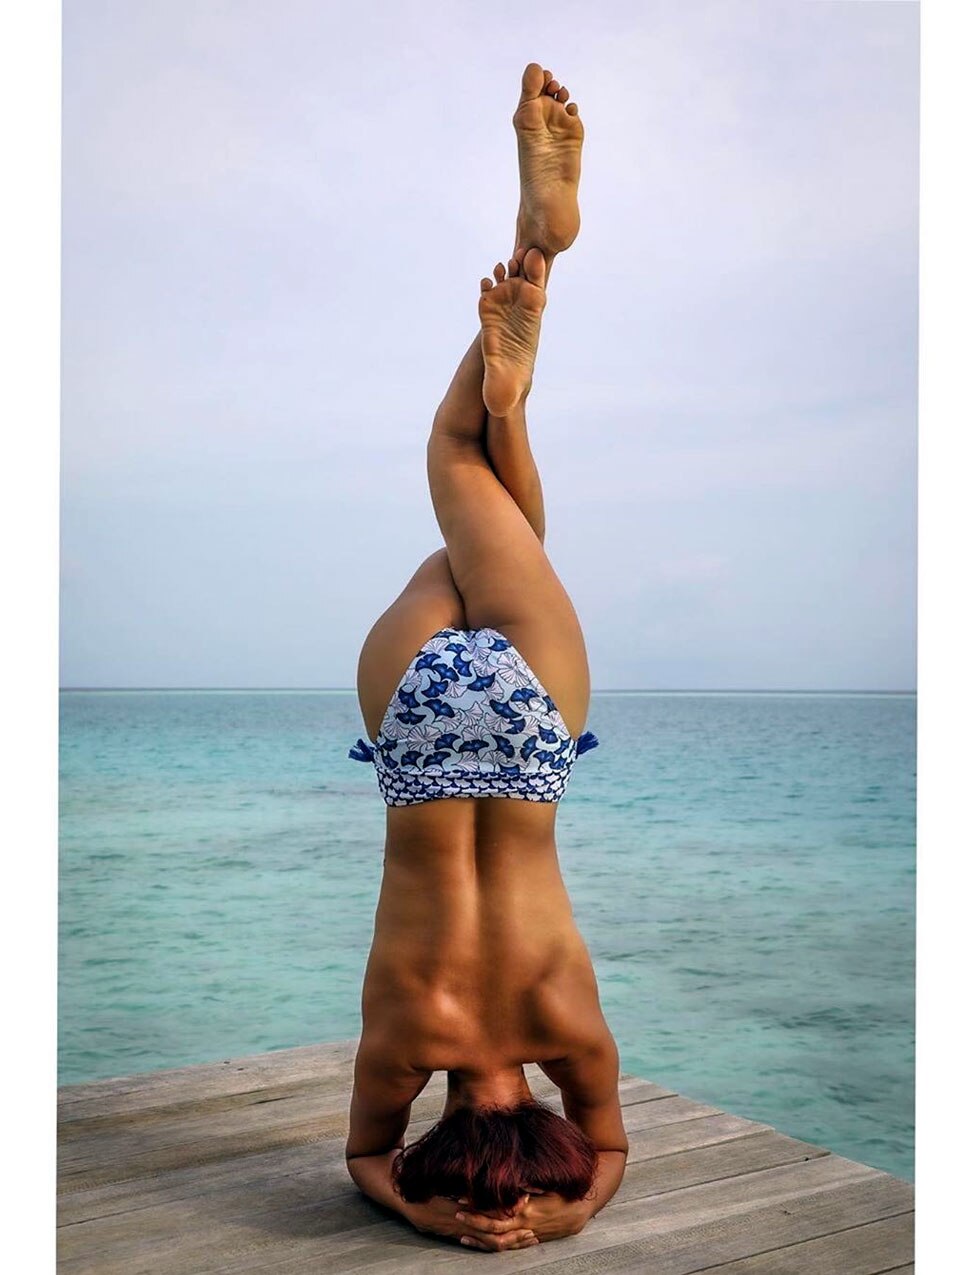 TV Actress Aashka Goradia Shares Topless Photos of her Yoga